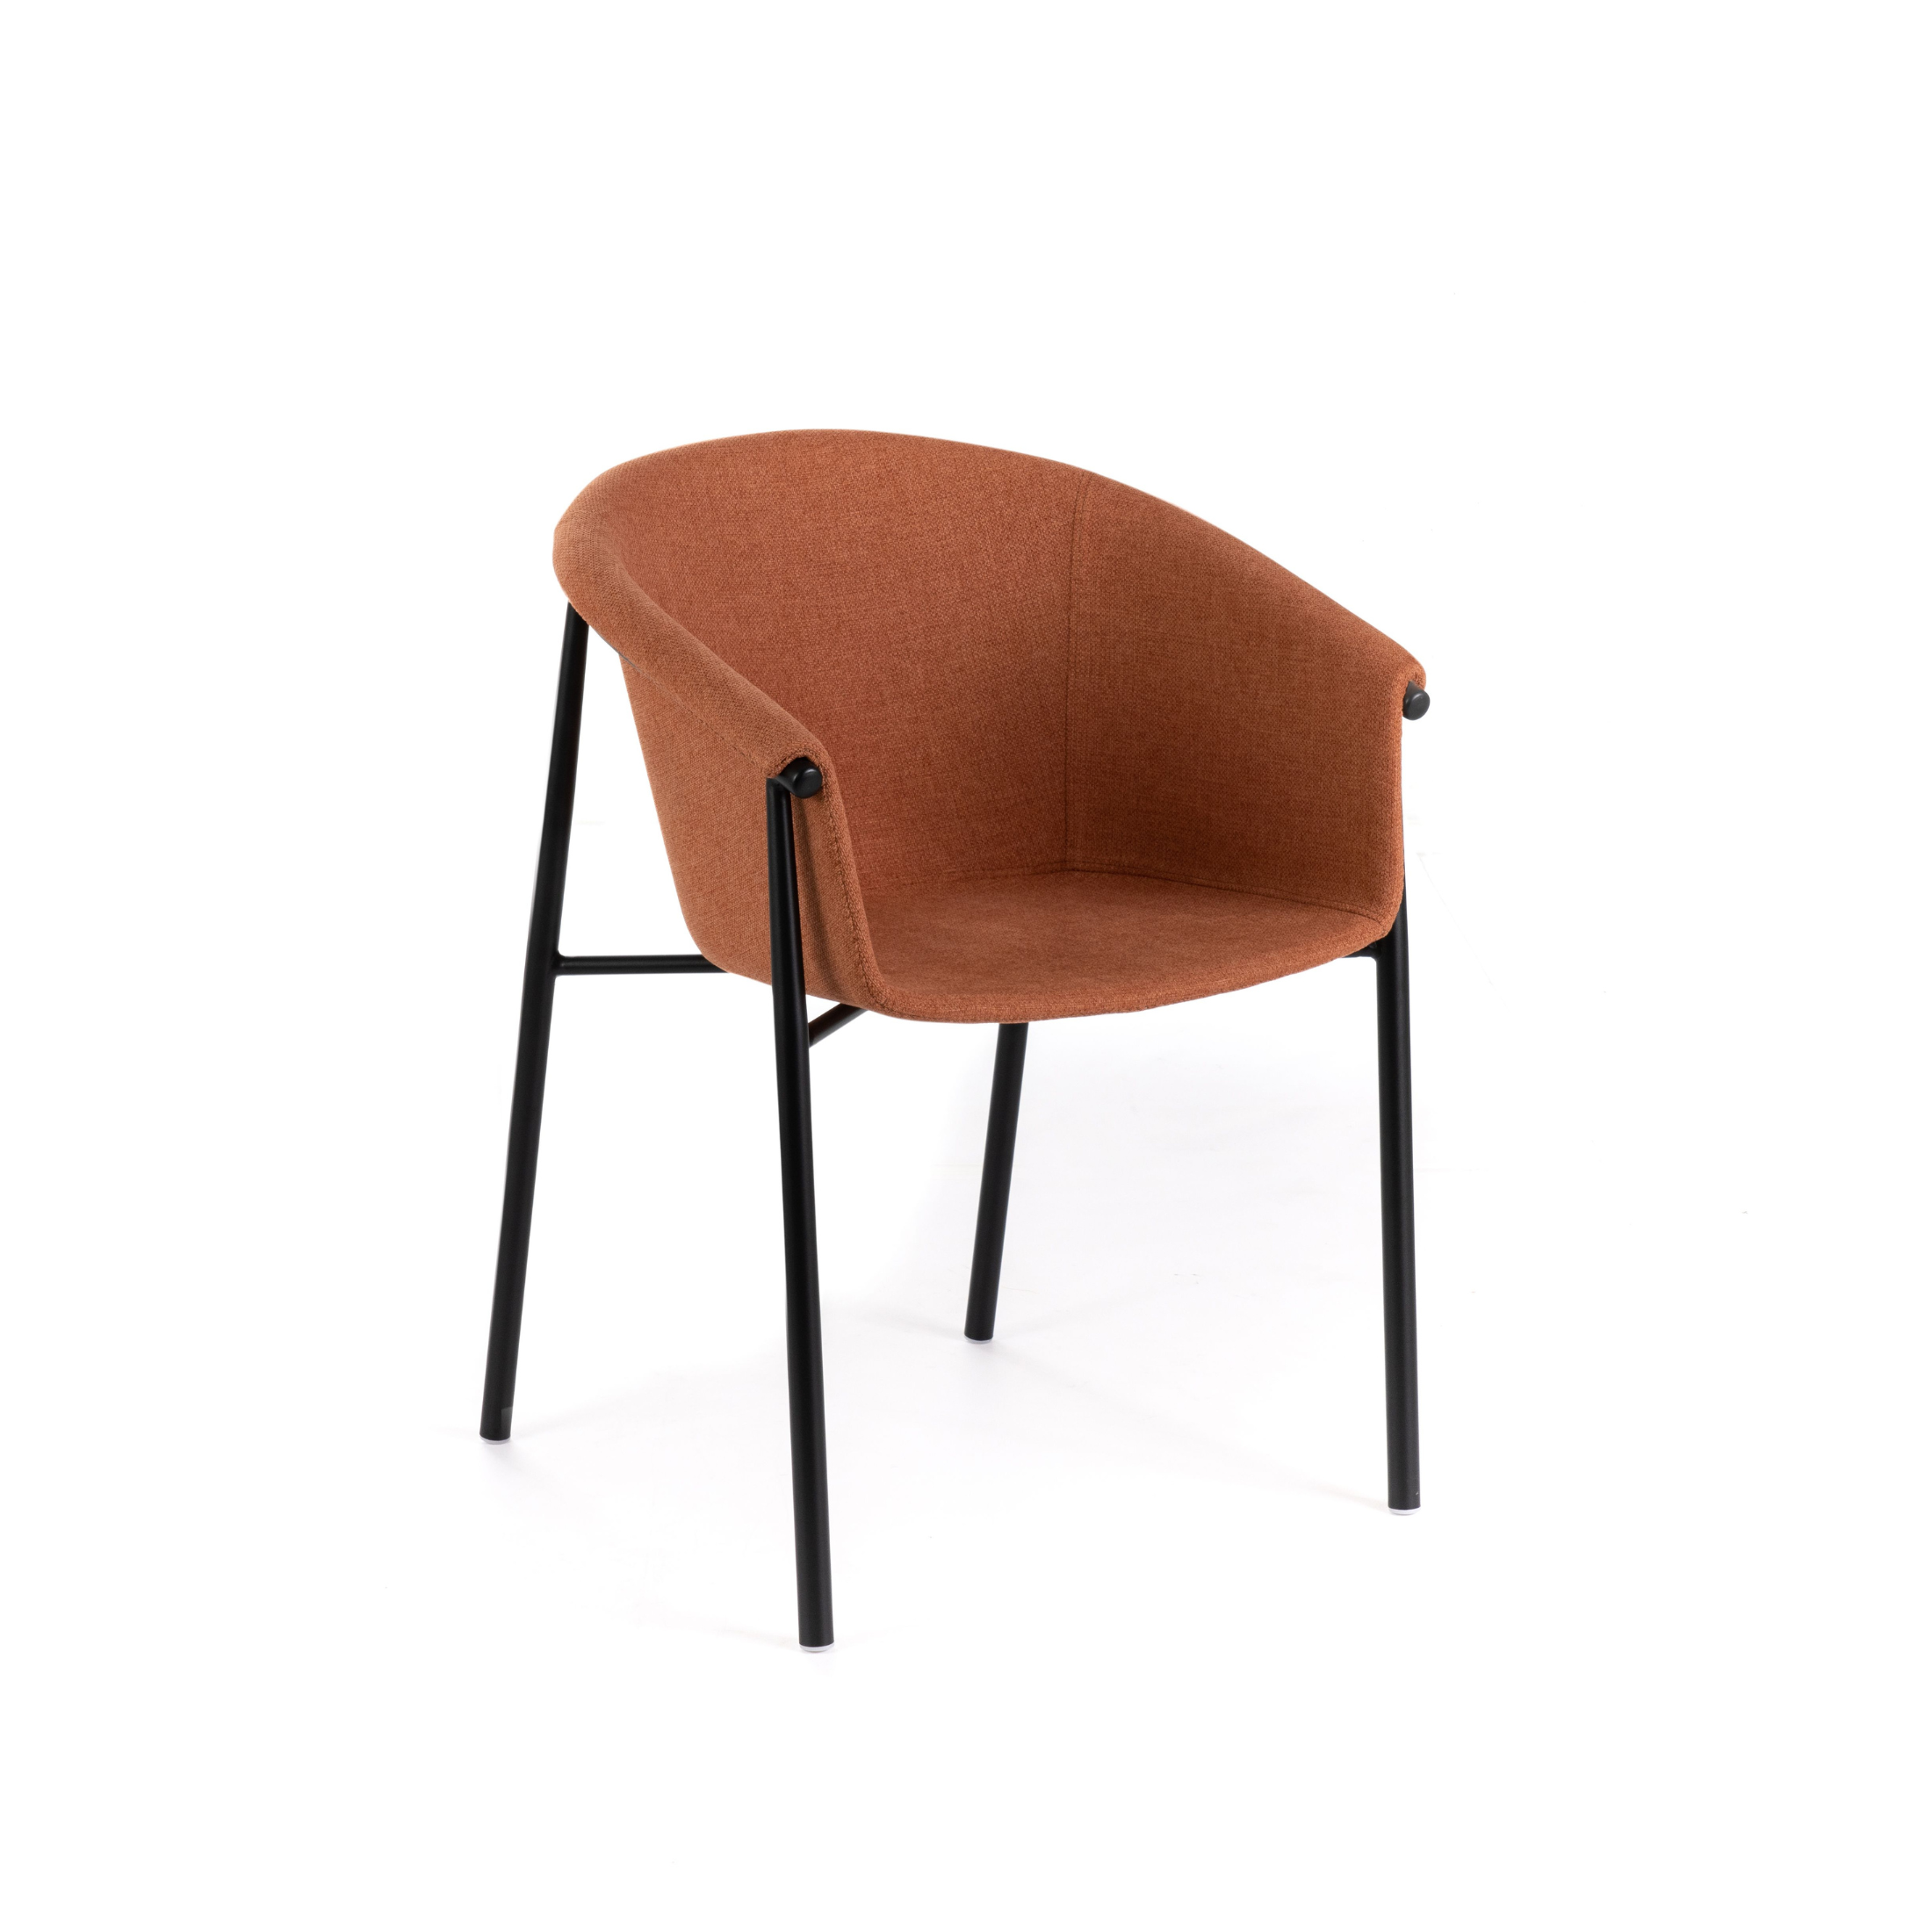 Silla de tela "Nari", elegante sillón moderno 56x58 79h cm